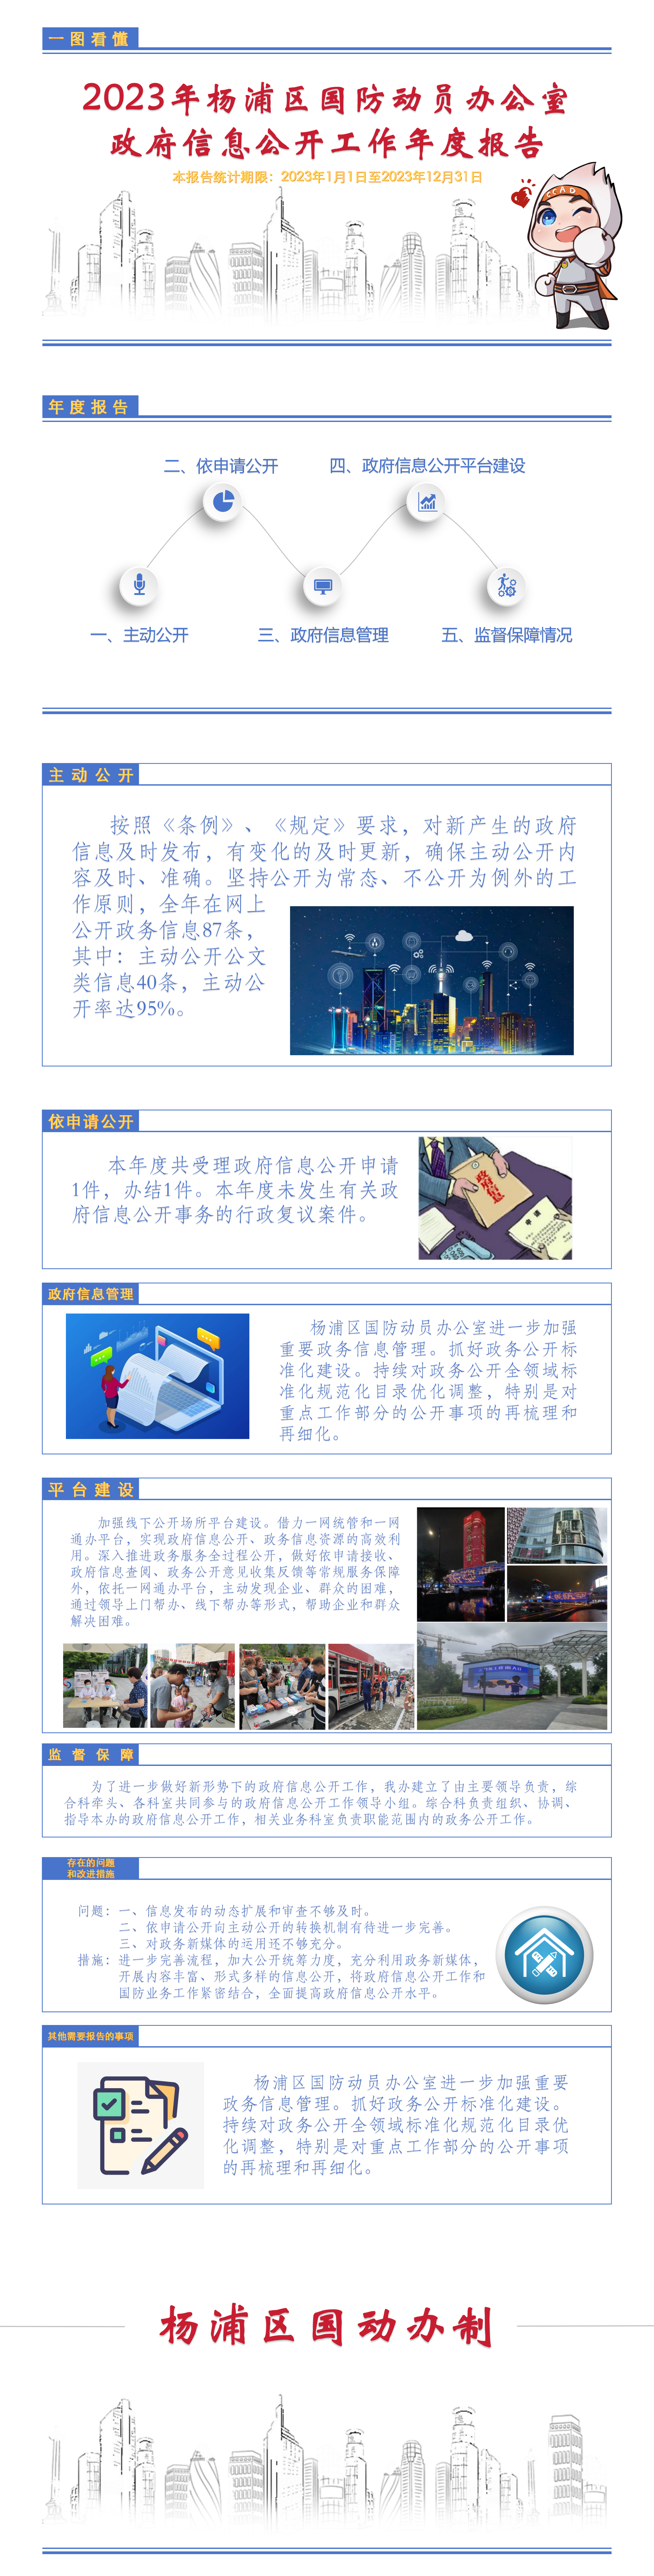 杨浦区国防动员办公室2023年政府信息公开工作年度报告 .png